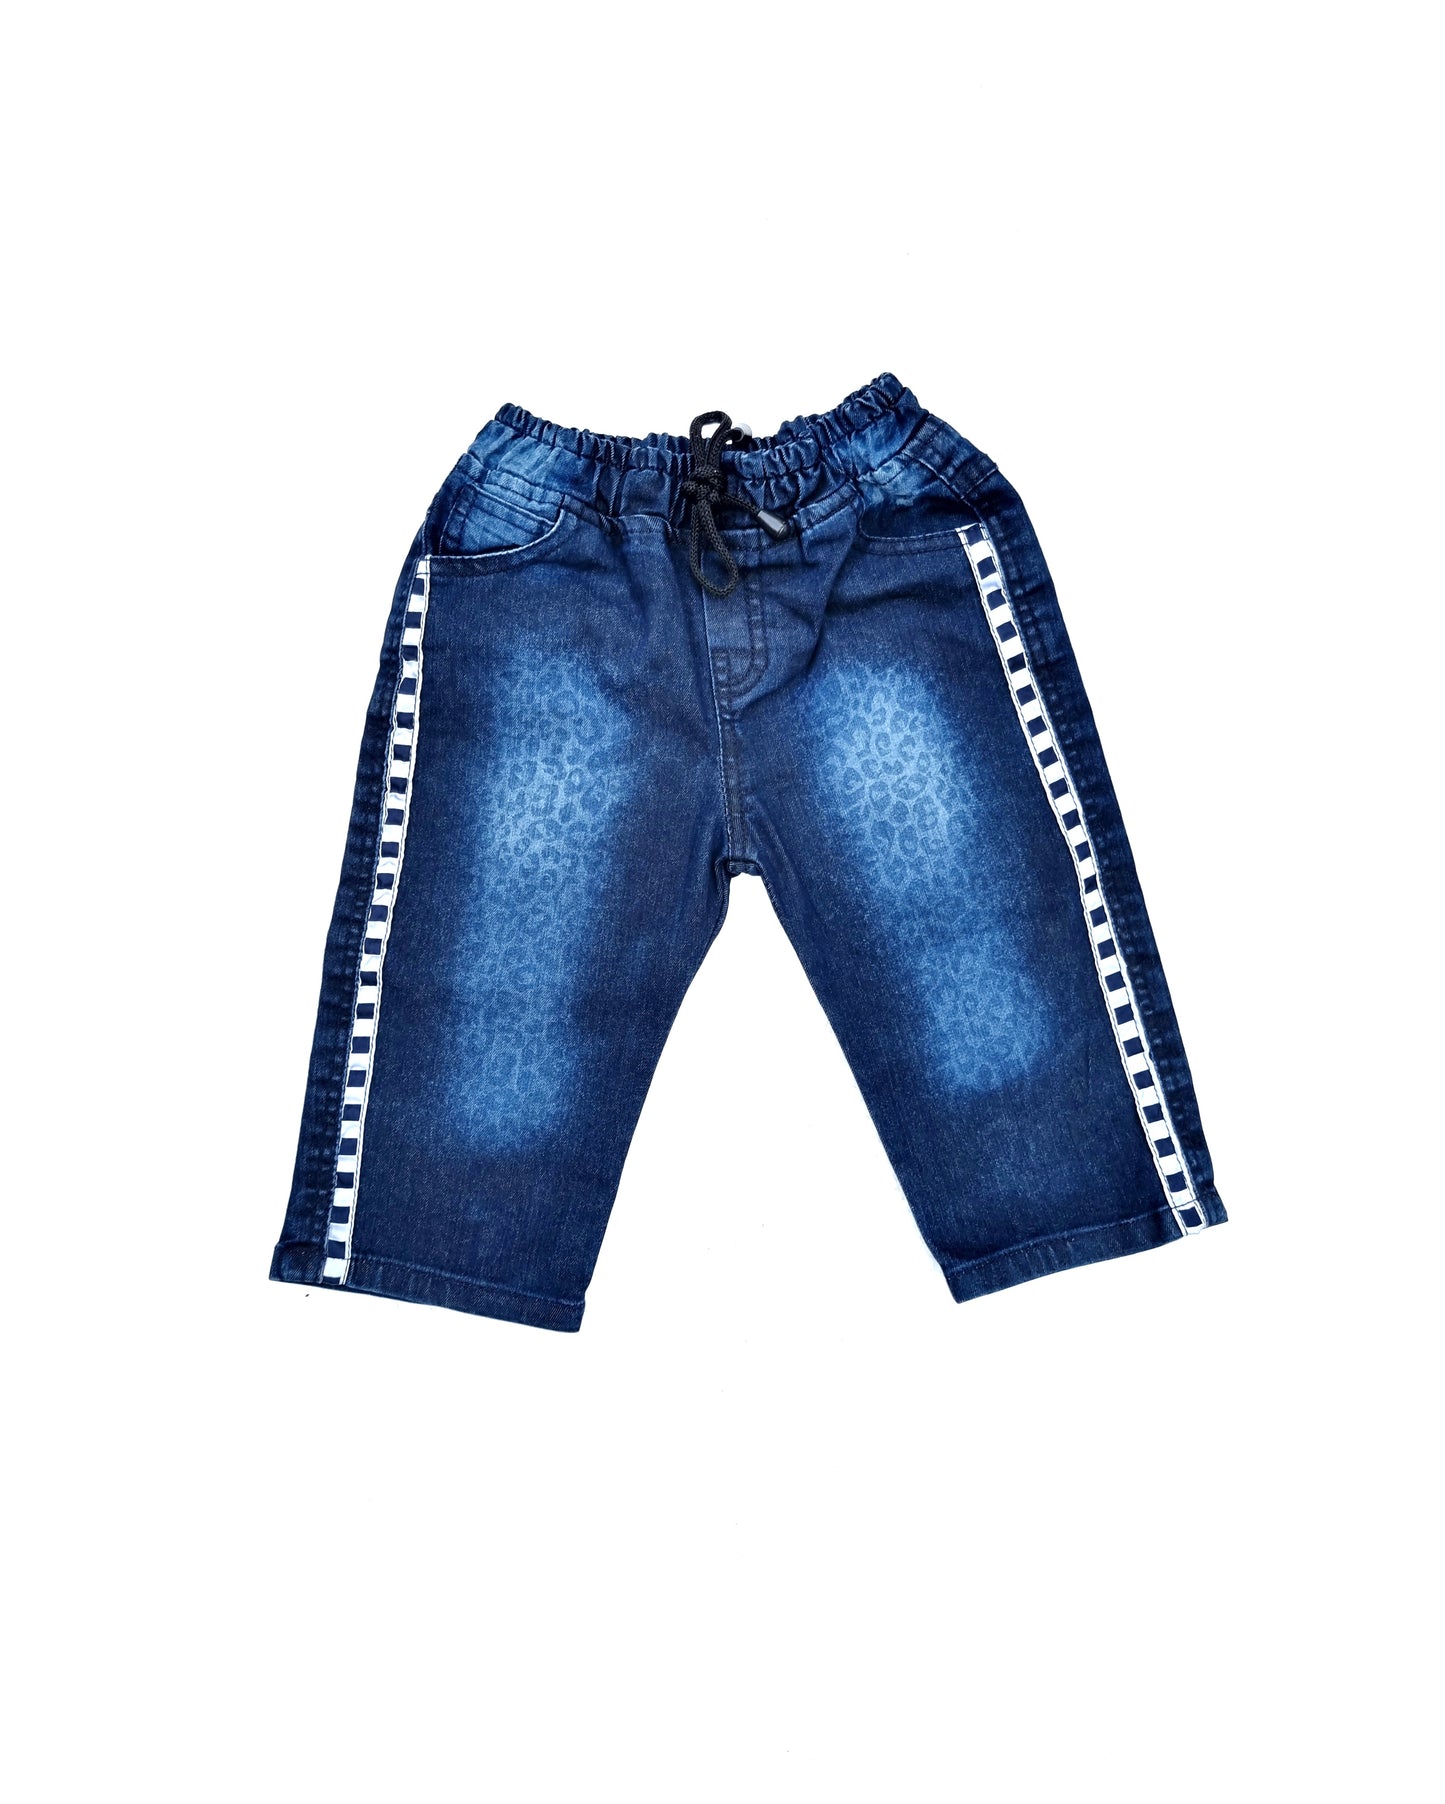 Blue Denim Printed Shorts